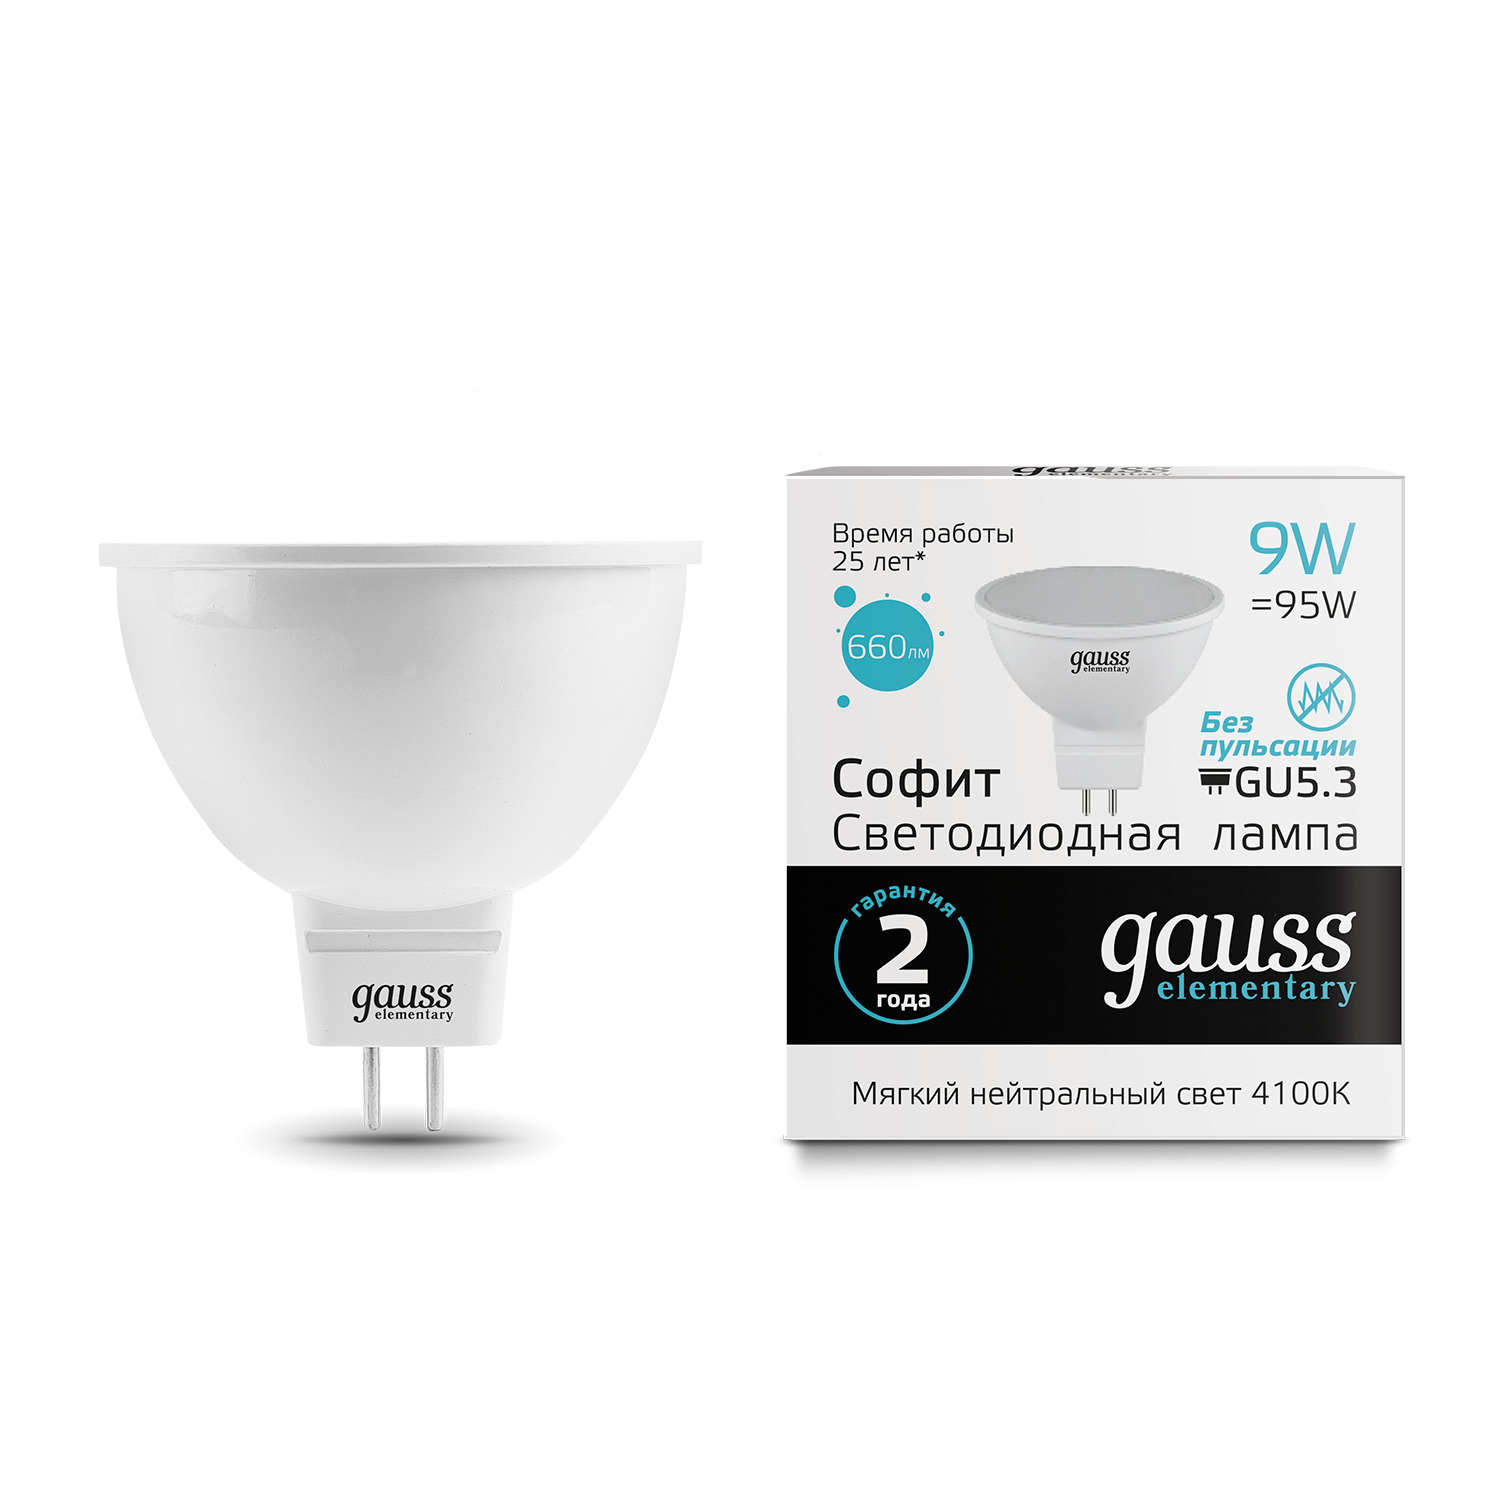 Лампа Gauss LED Elementary MR16 GU5.3 9W 4100K gauss led elementary mr16 gu5 3 3 5w 4100k 1 10 100